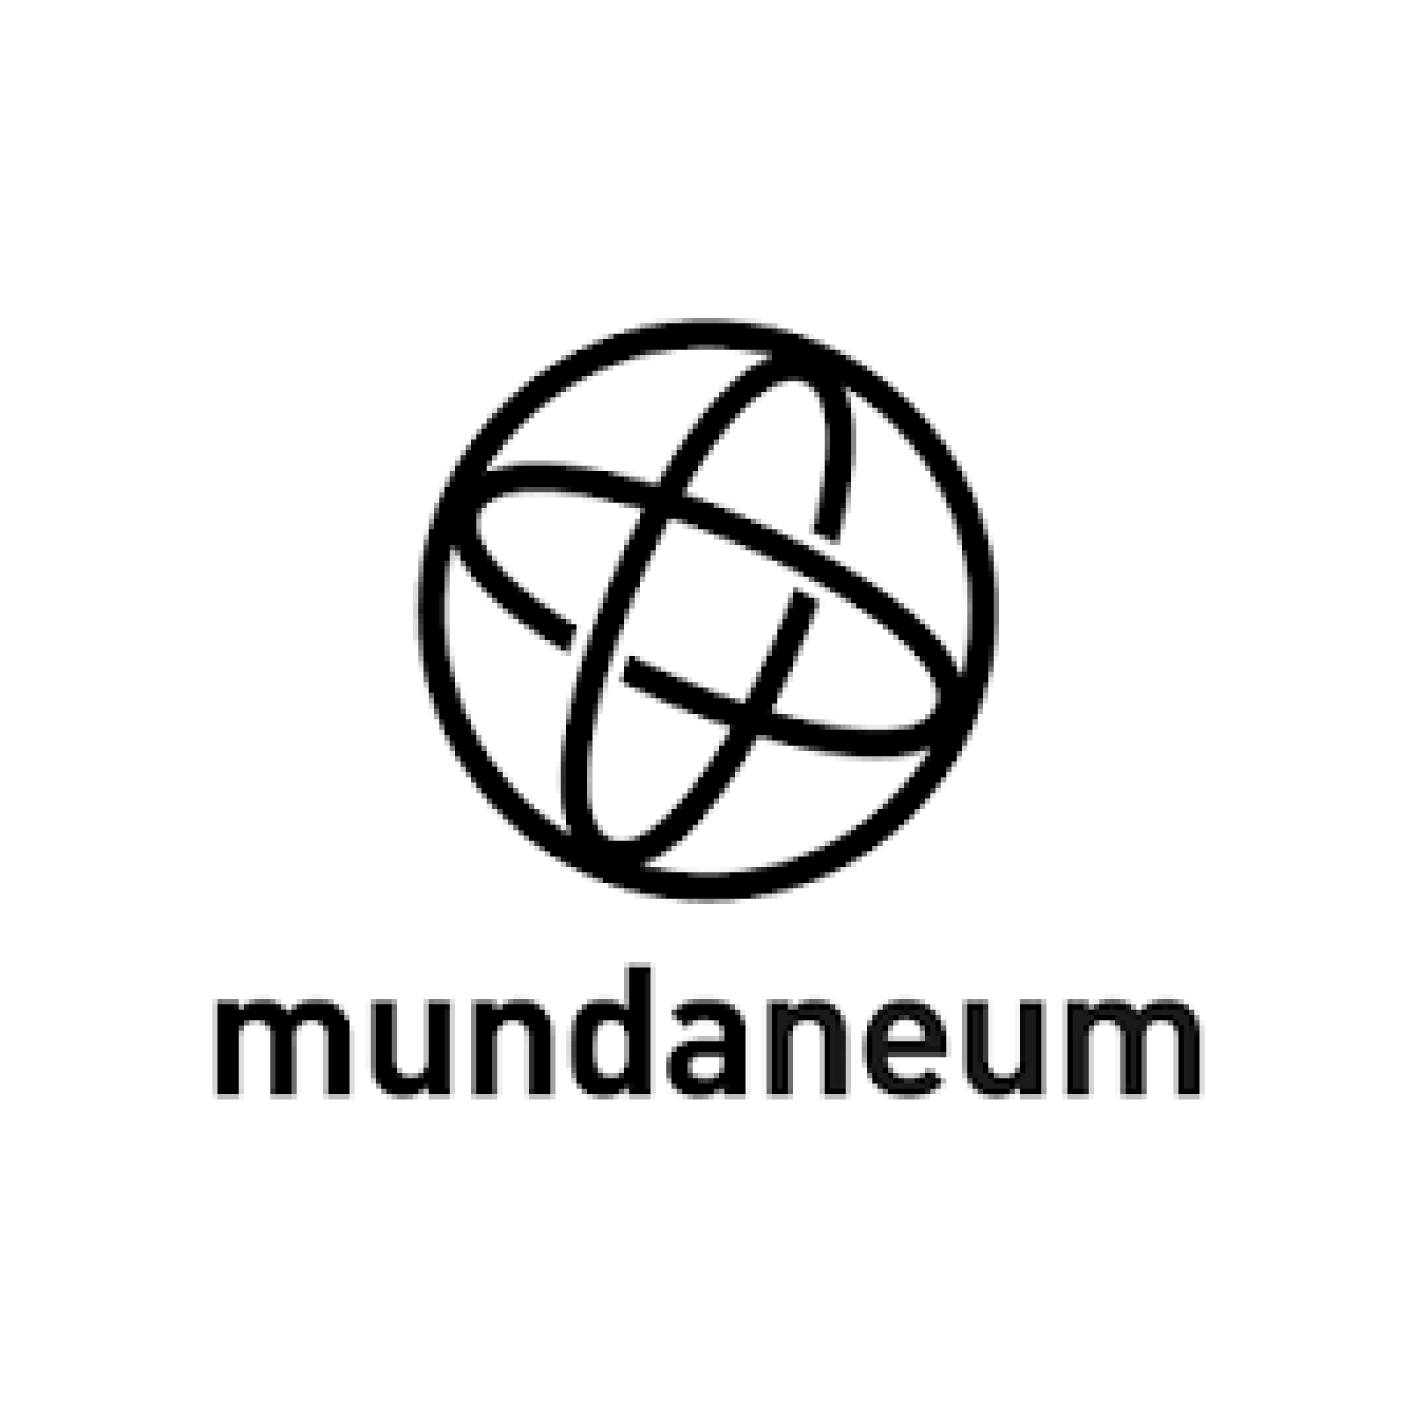 mundaneum2